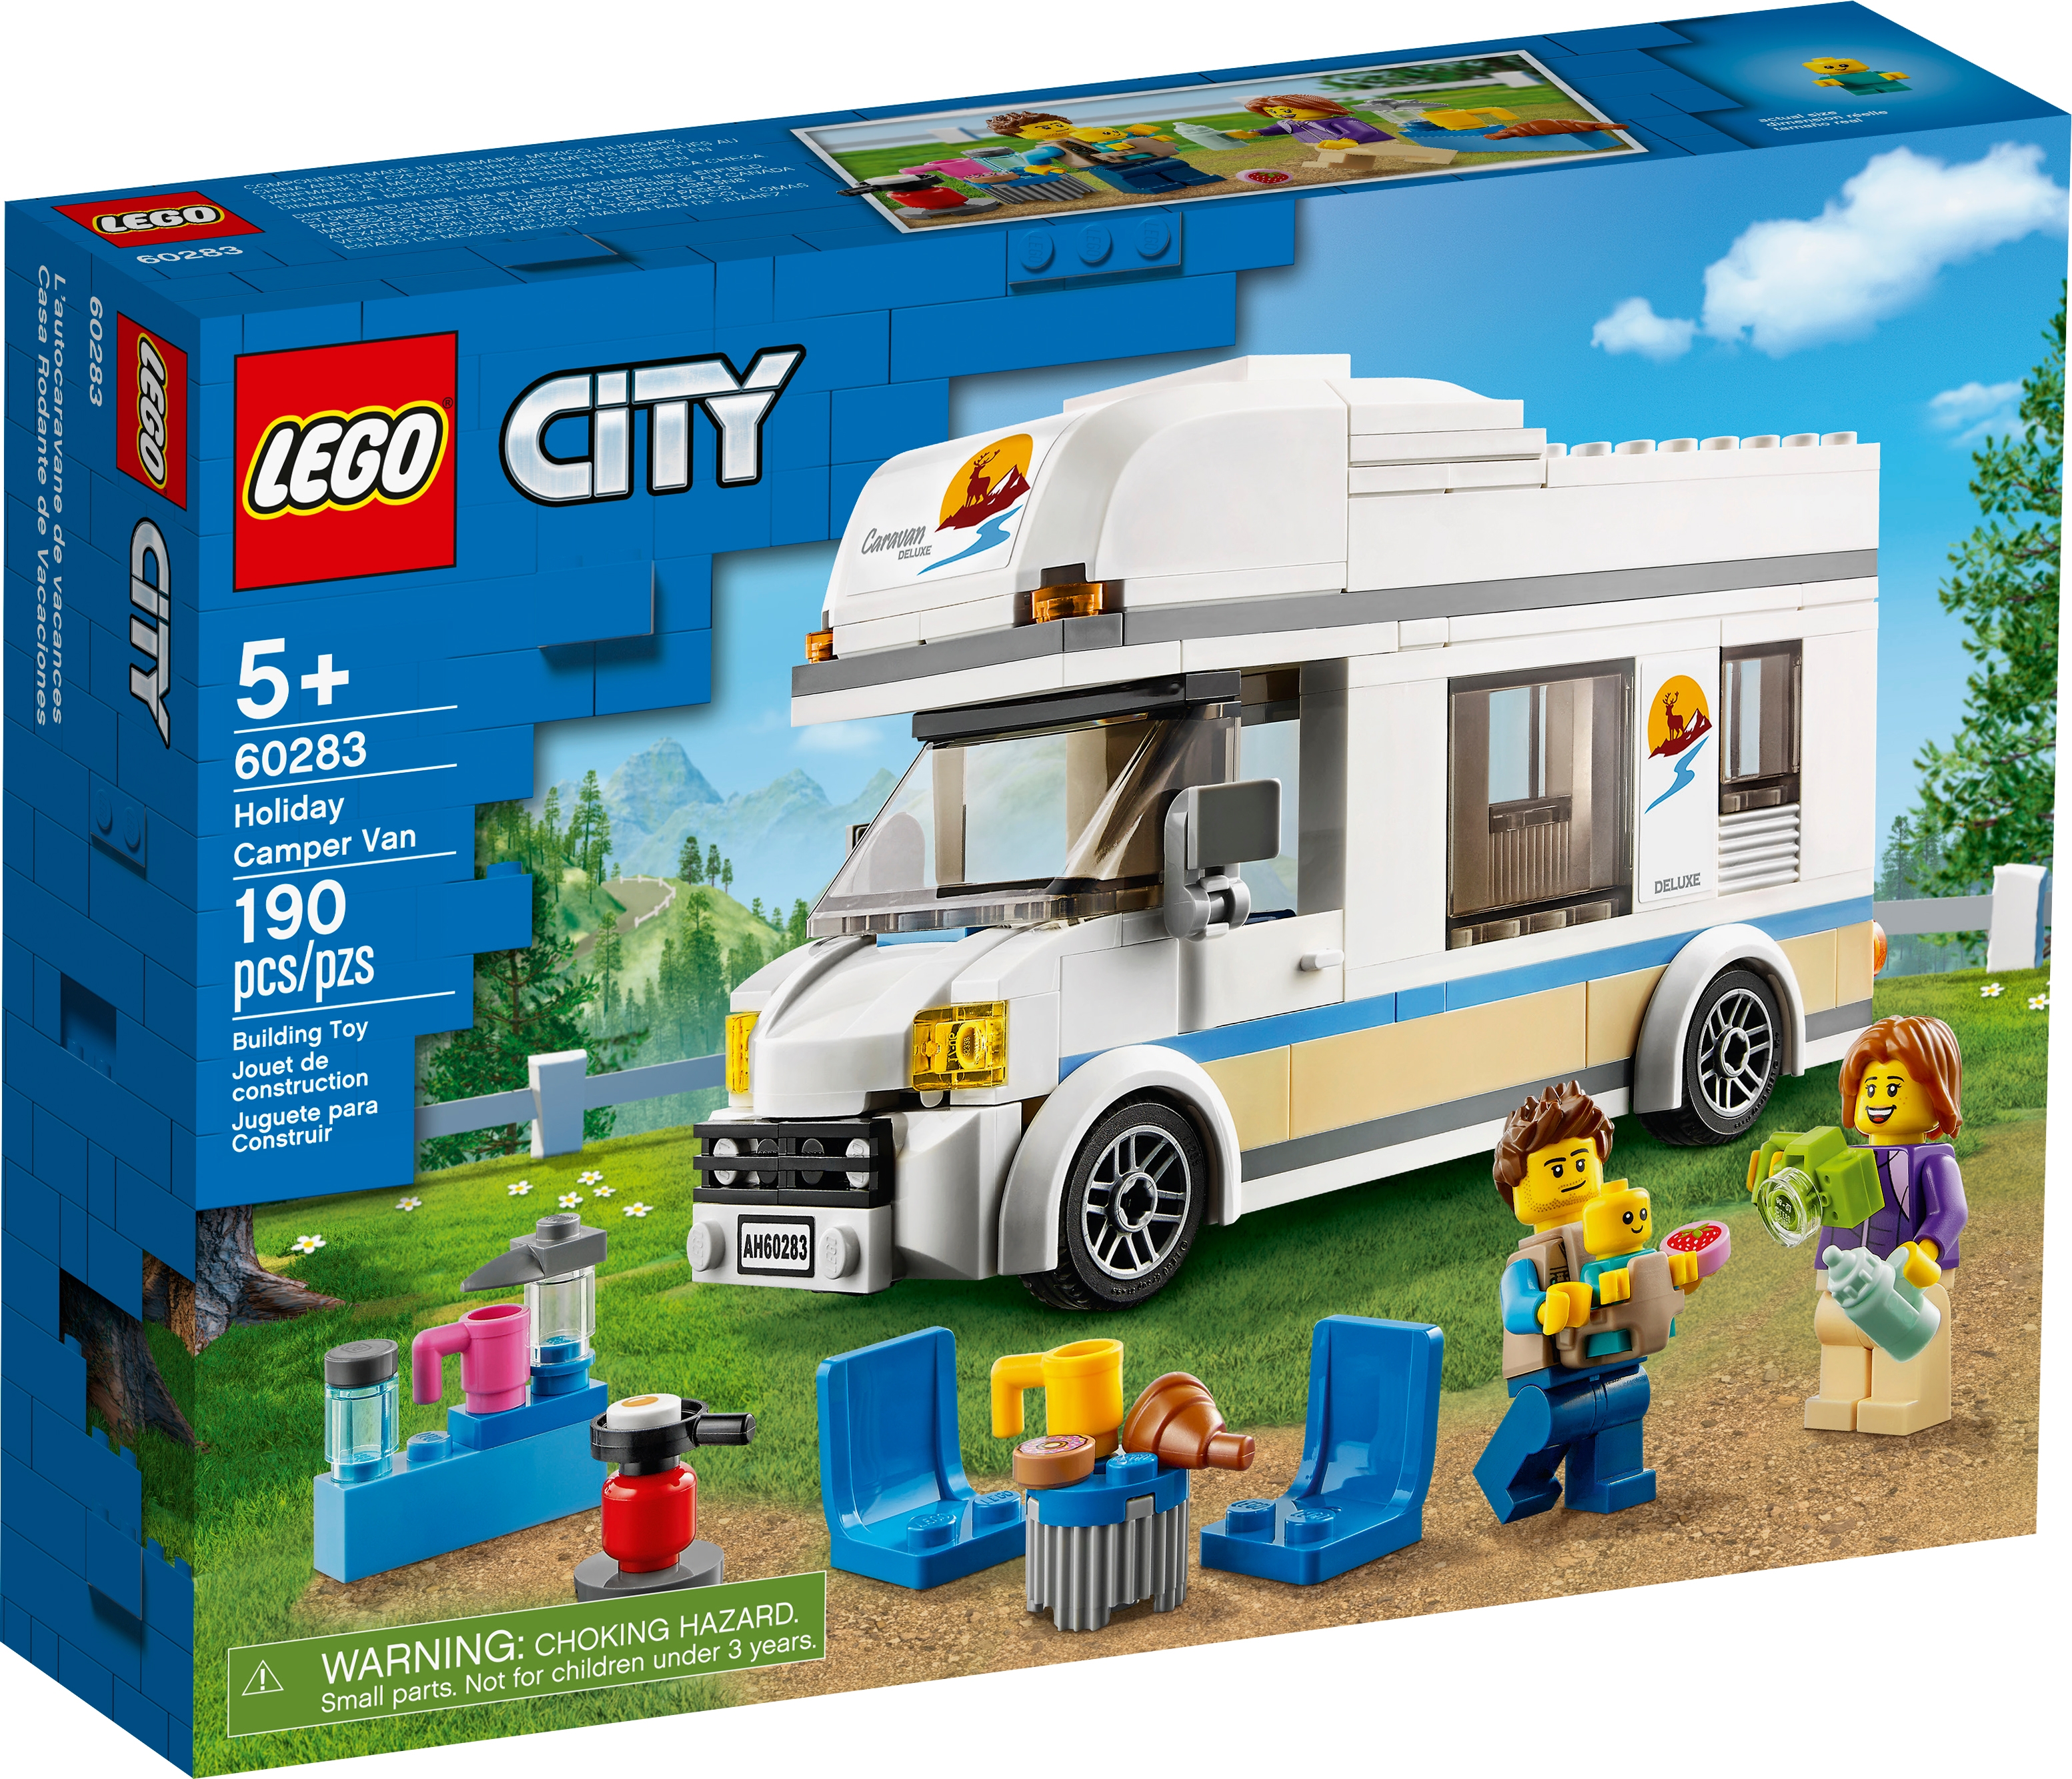 Holiday Camper Van 60283 | City | Buy 